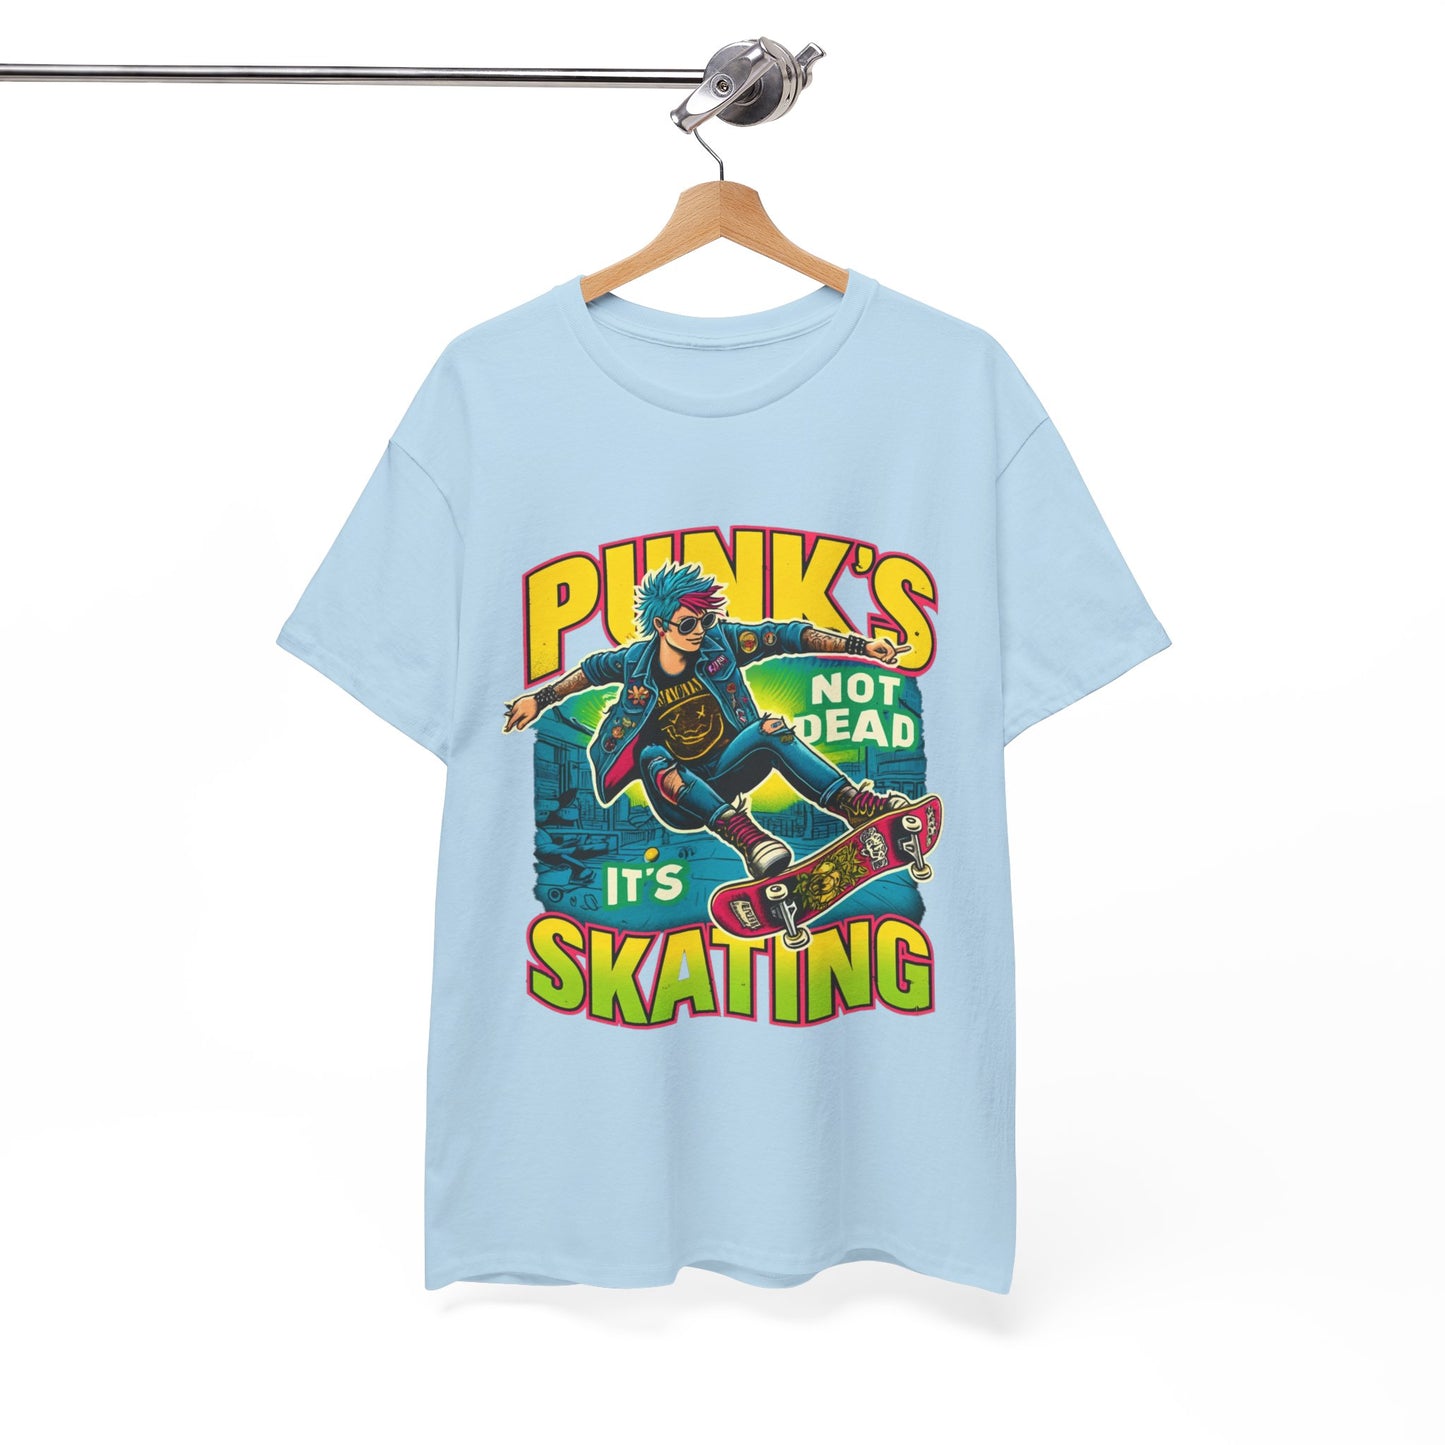 Y.M.L.Y. "Punk's Not Dead, It's Skating" T-shirt Skate punk T-shirt Skateboarding T-shirt